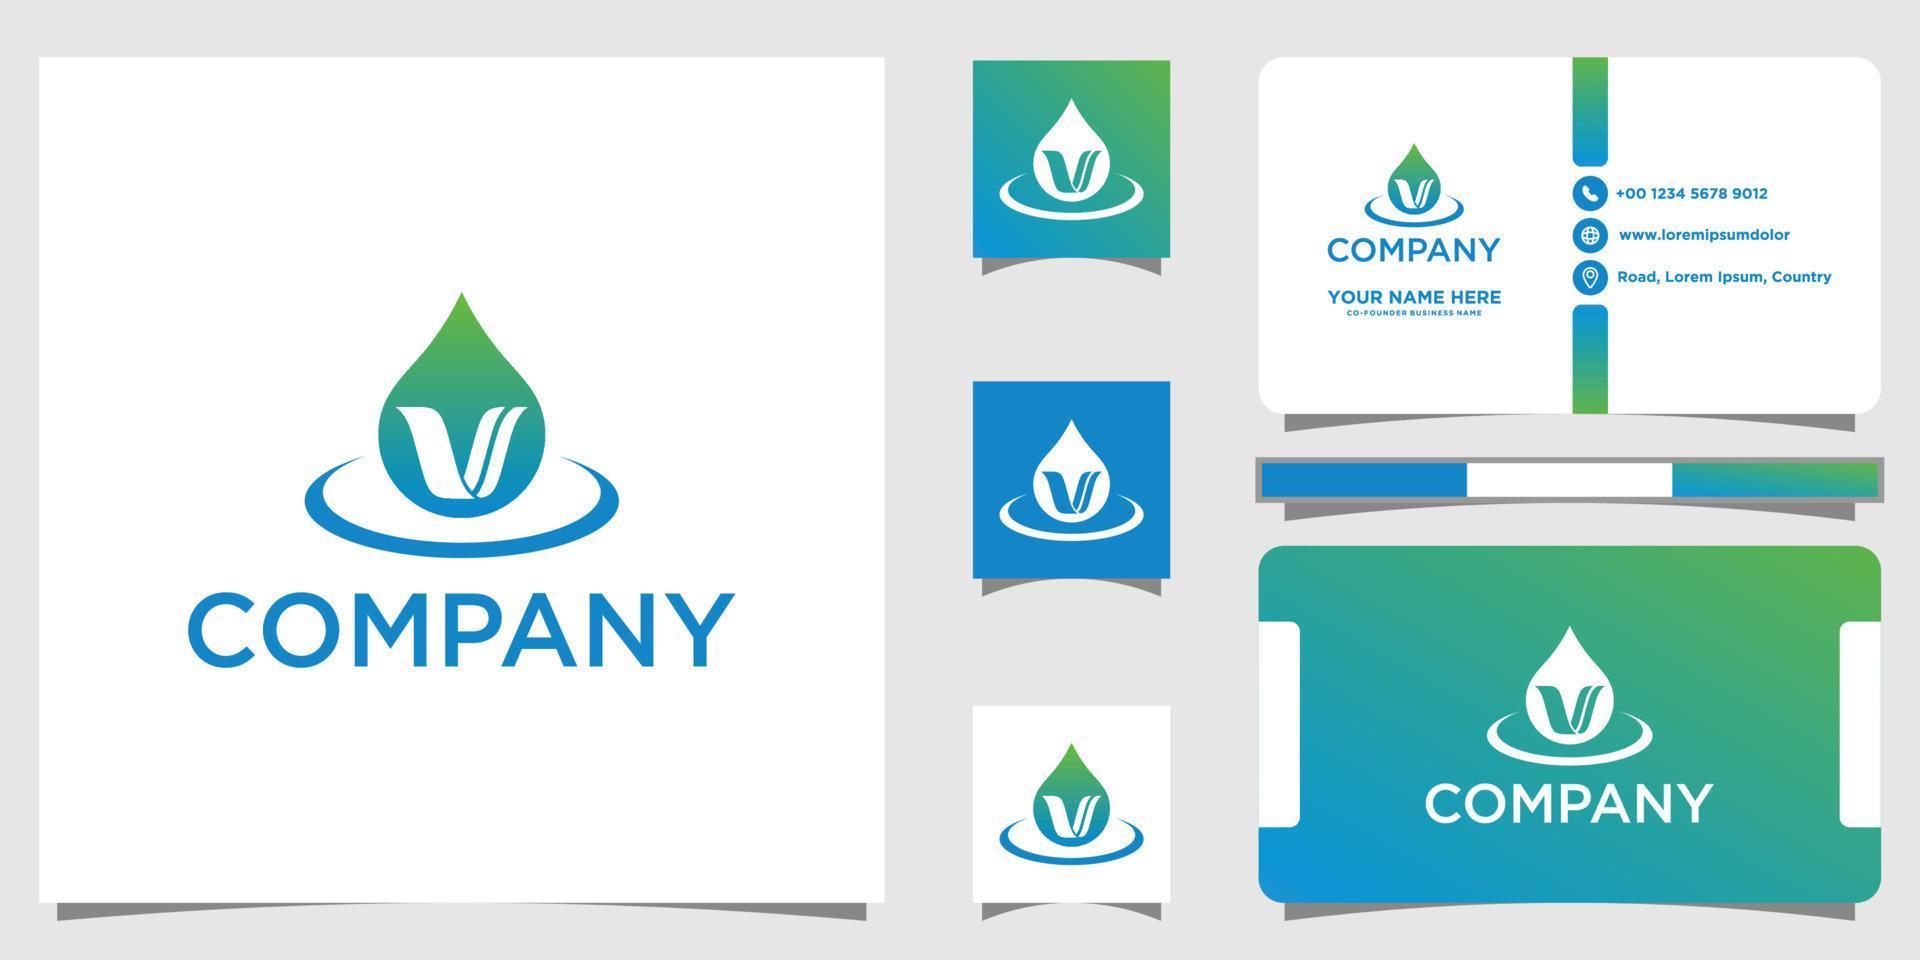 v drop logo tiene un estilo lujoso, único, simple e inteligente. diseño de logotipo y tarjeta de visita. vector